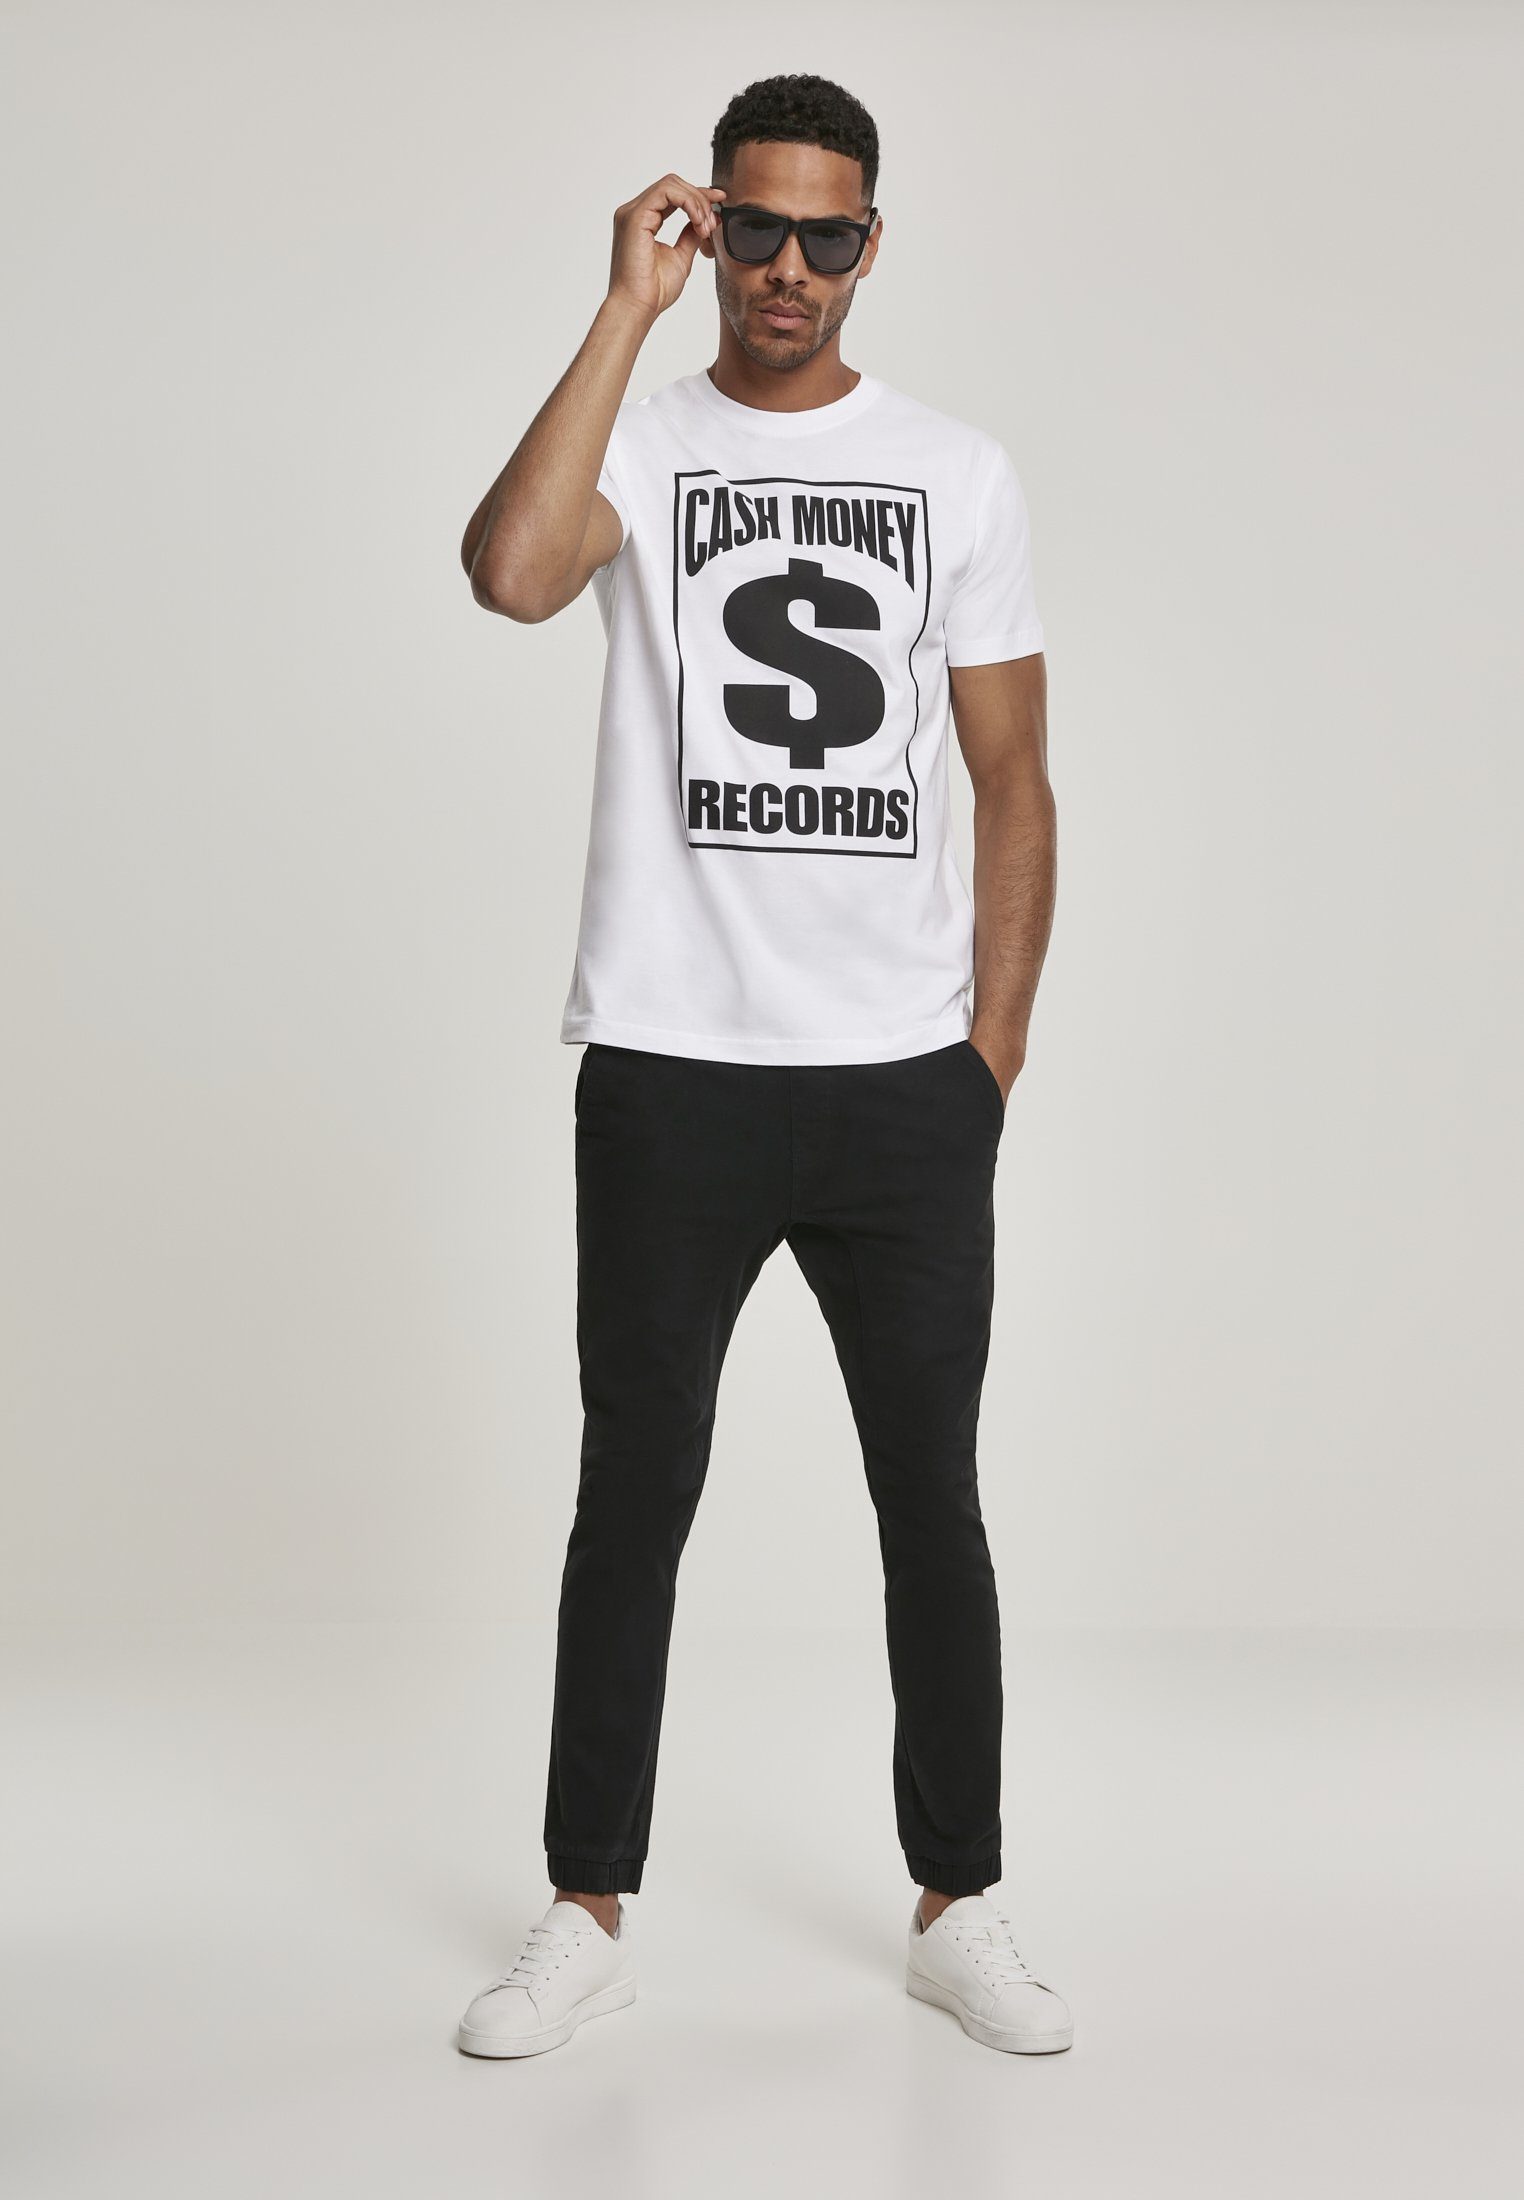 Herren Cash Tee Tee Mister Records Money Records MT1057 Cash MisterTee white (1-tlg) Money T-Shirt